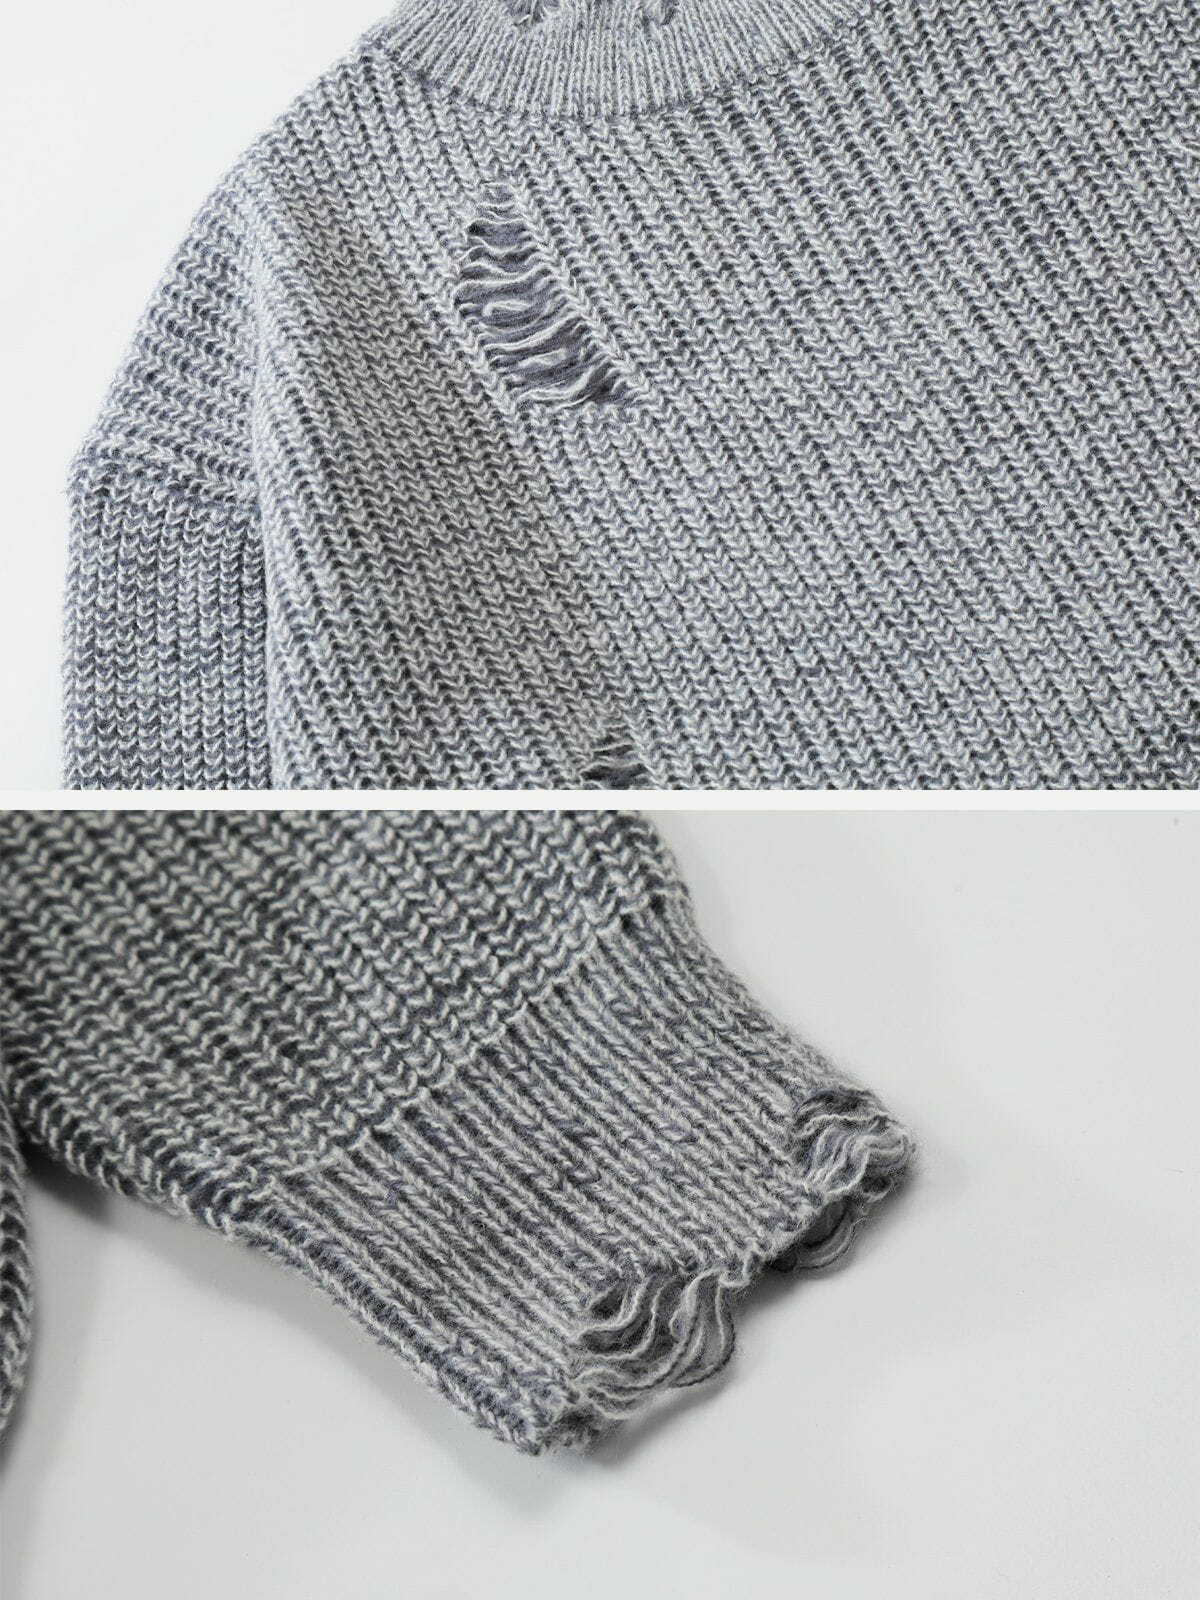 retro ripped knit sweater y2k fashion essential 7530